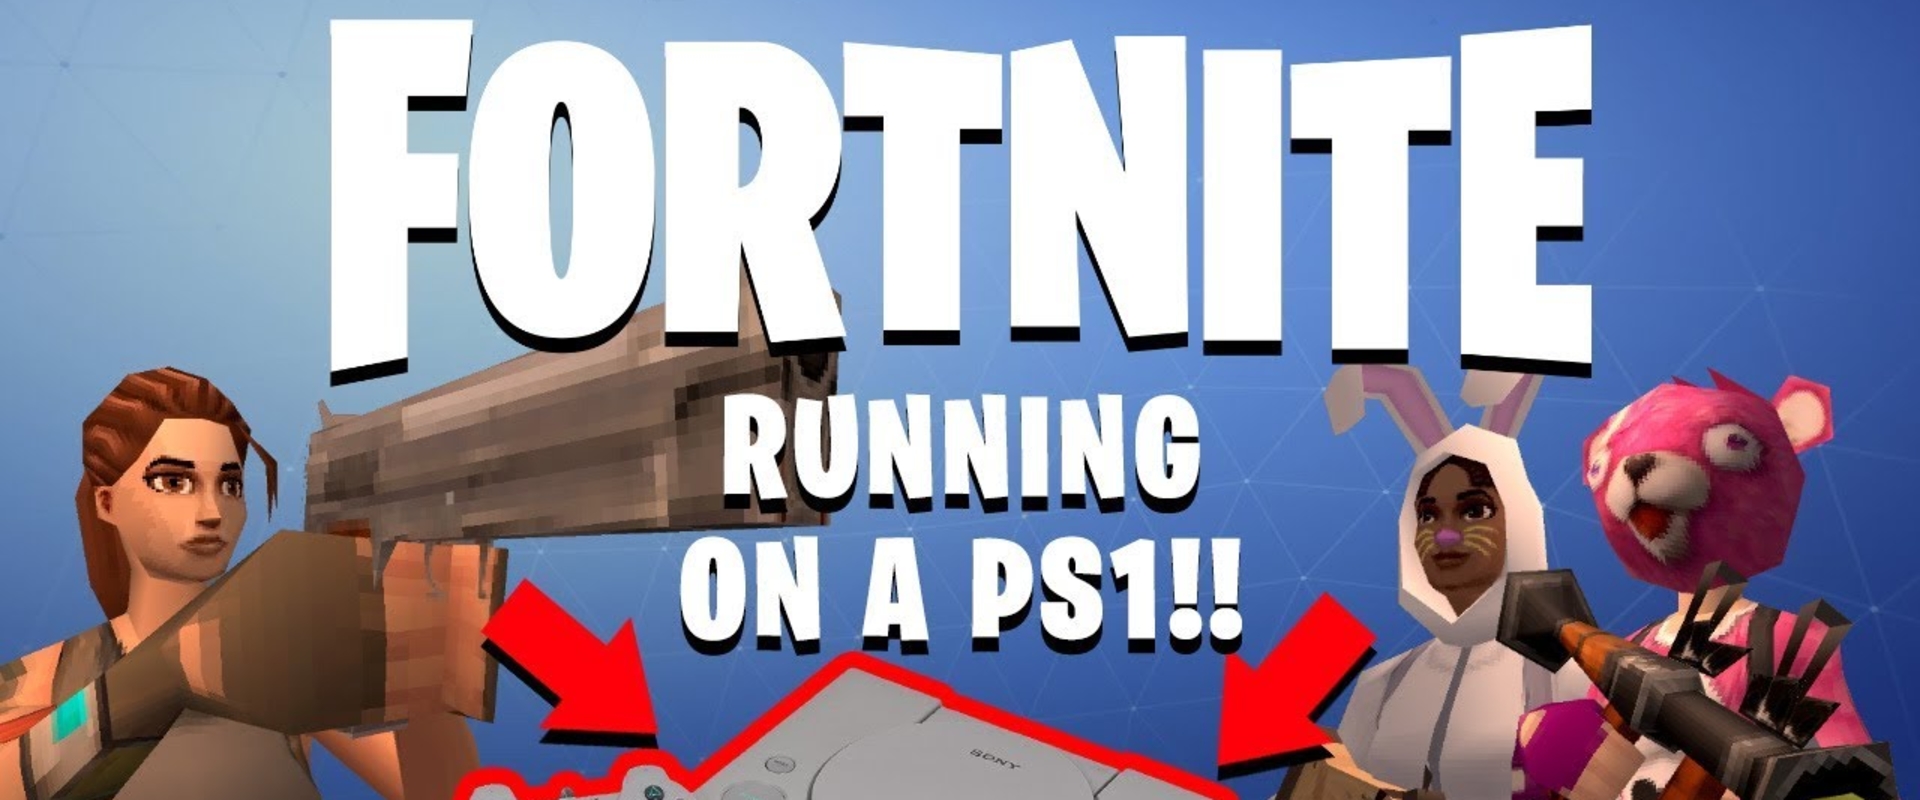 Egy youtuber megálmodta, hogy milyen lenne a Fortnite PS1-en